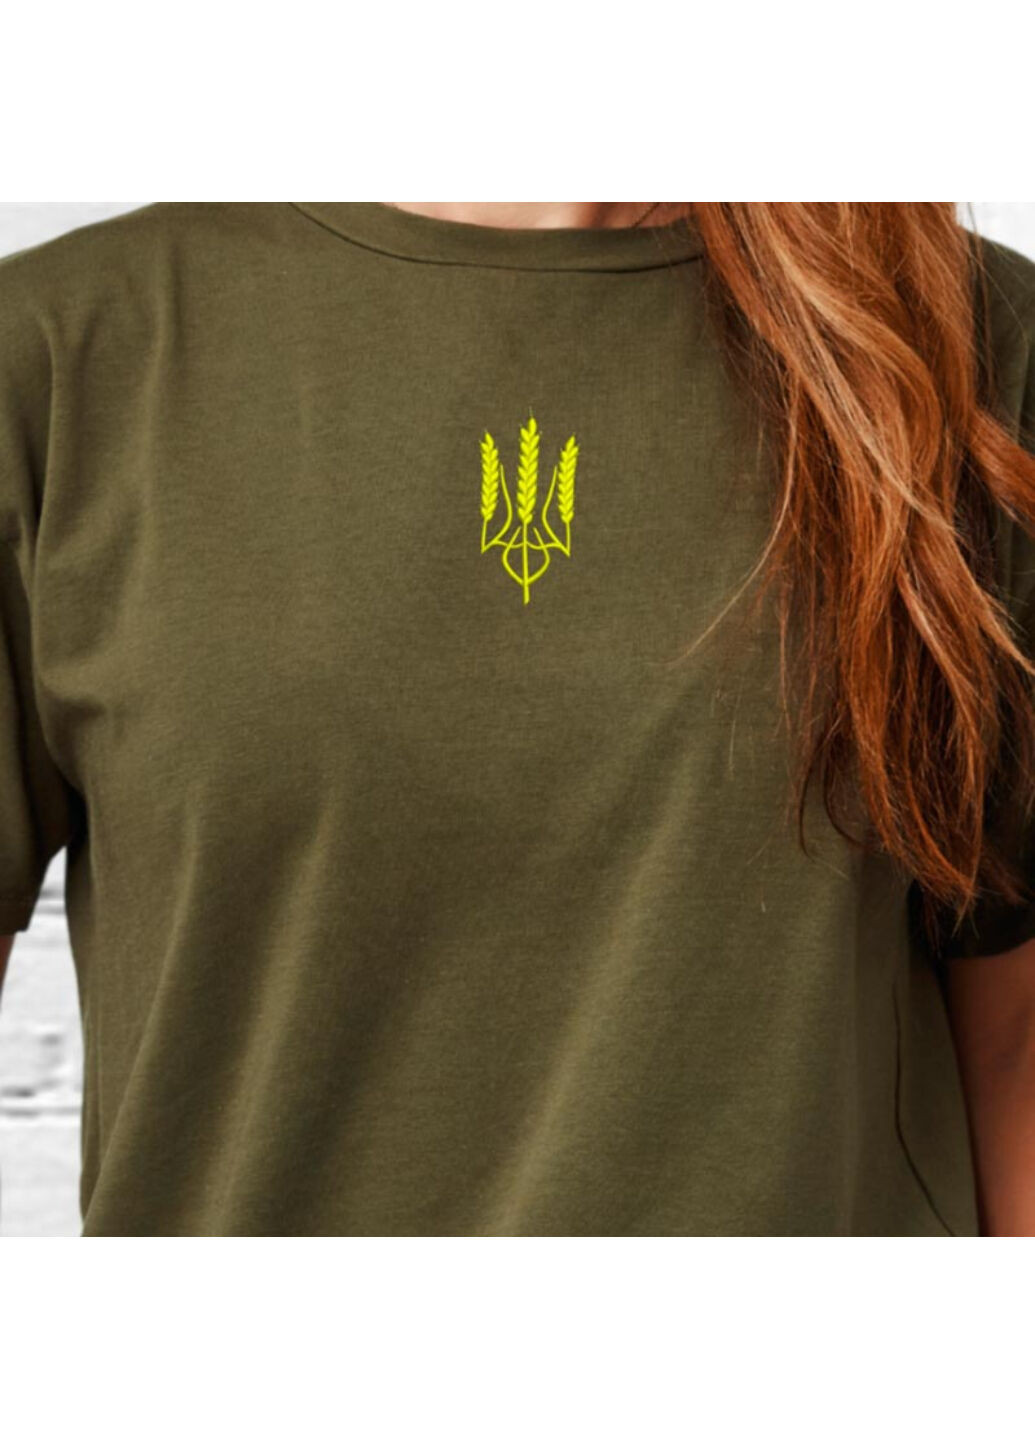 Хакі (оливкова) футболка з вишивкою тризуба (колос) 02 жіноча millytary green m No Brand